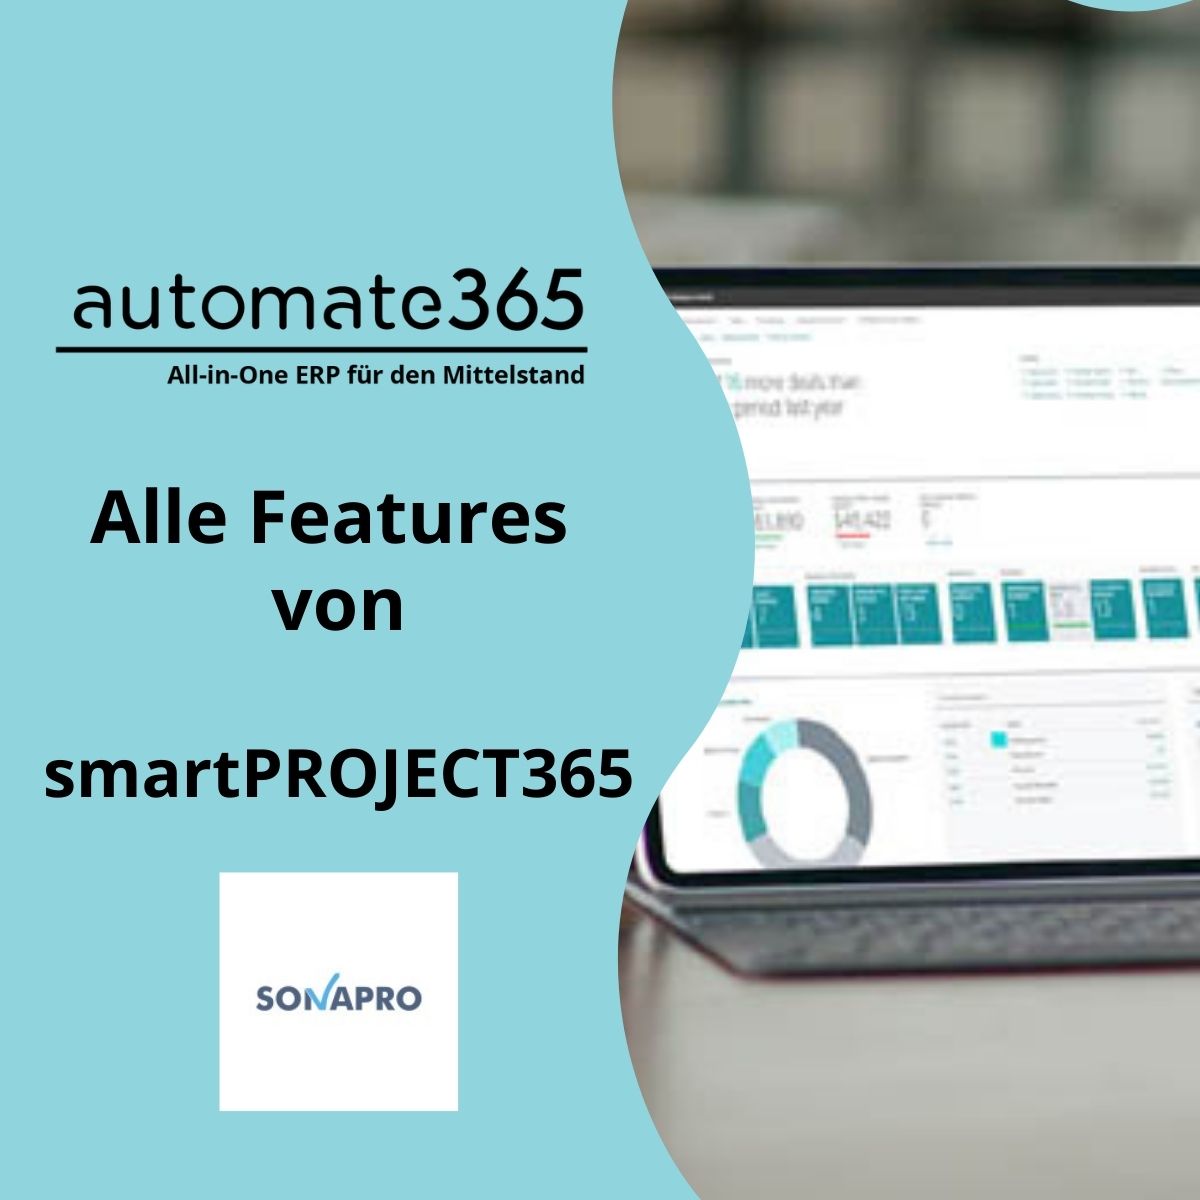 Alle Features von smartPROJECT365